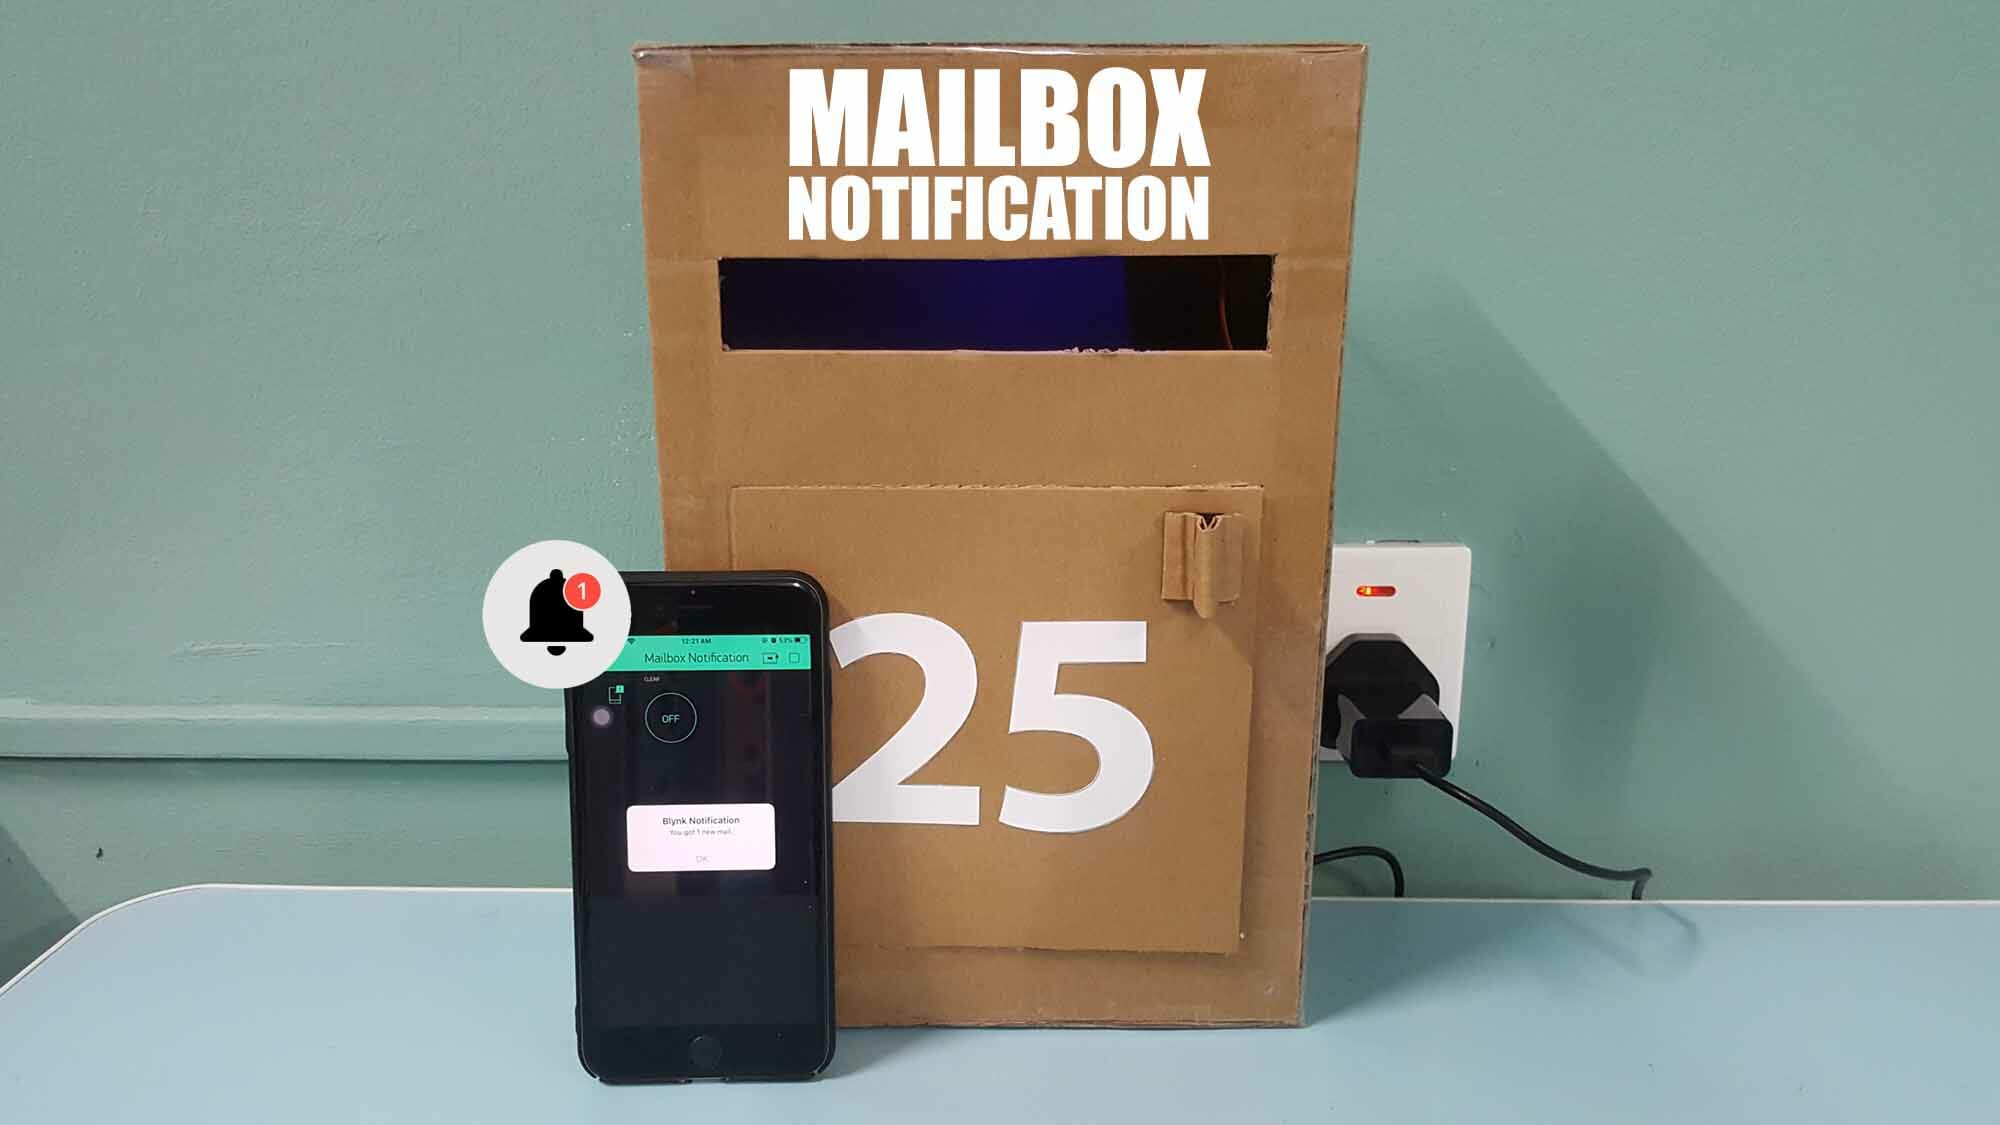 Mailbox Notification Using Blynk App